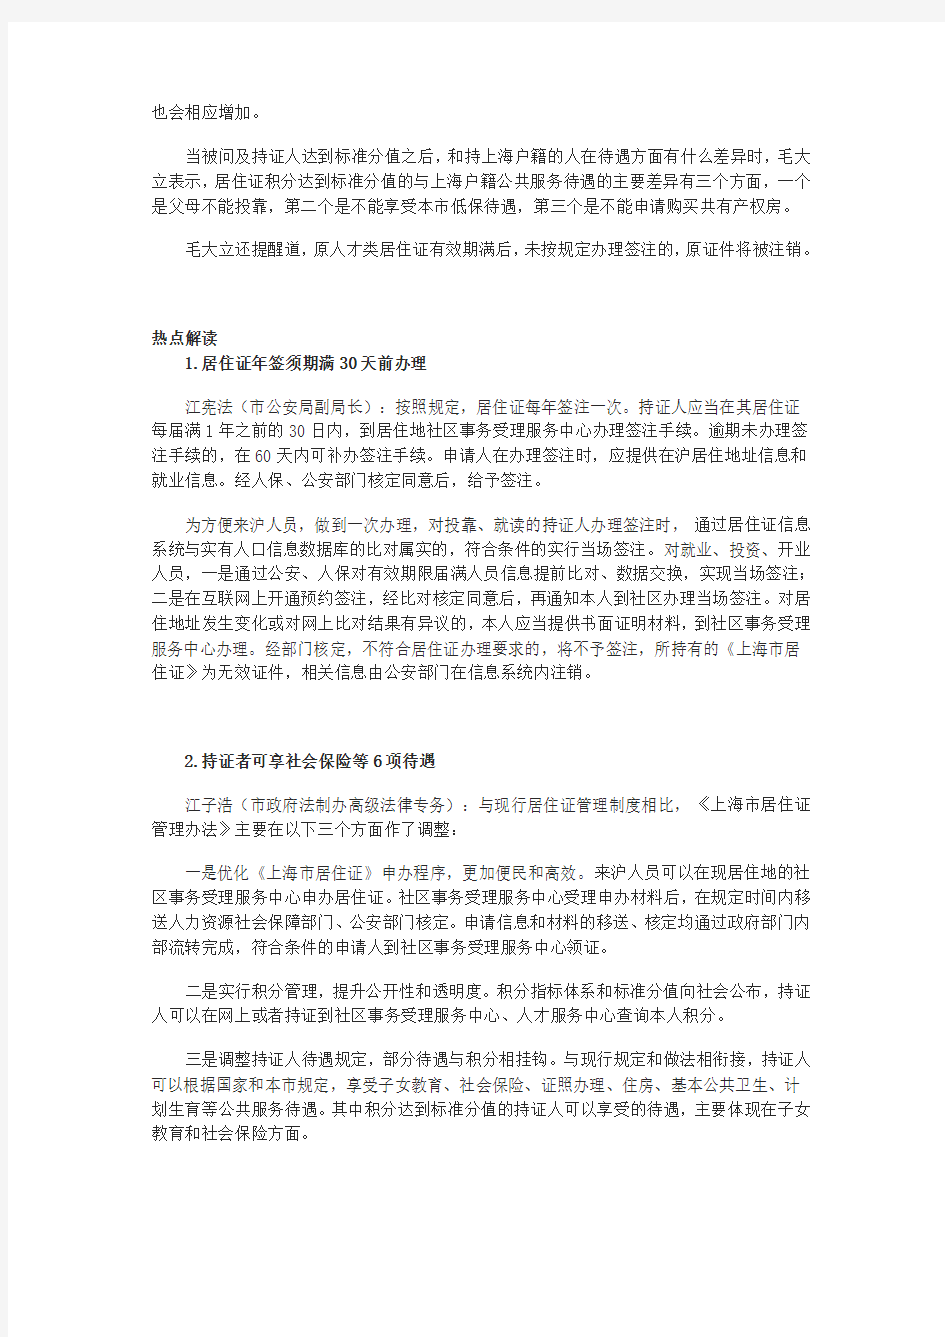 上海居住证2013年7月1日新政策_积分制